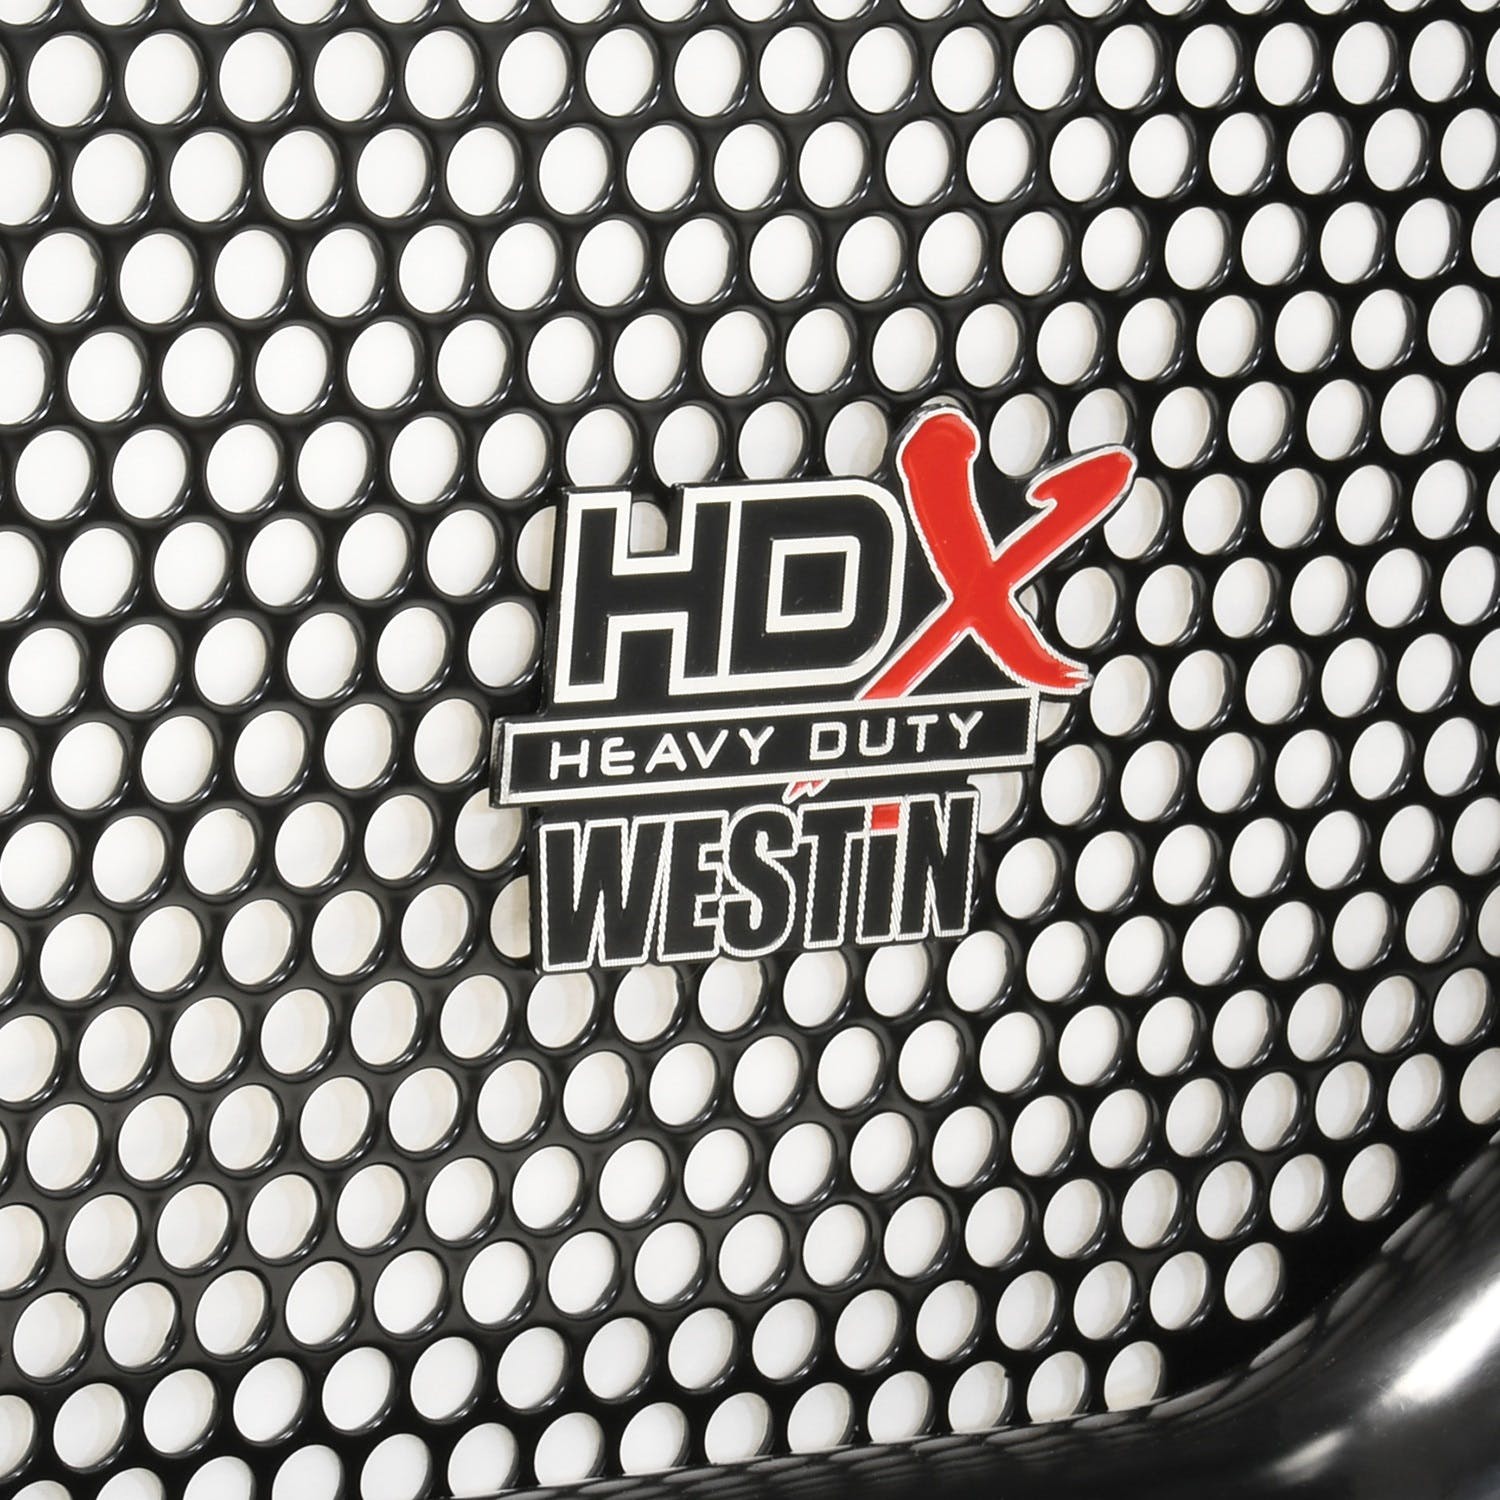 Westin Automotive 57-4065 HDX Grille Guard Black